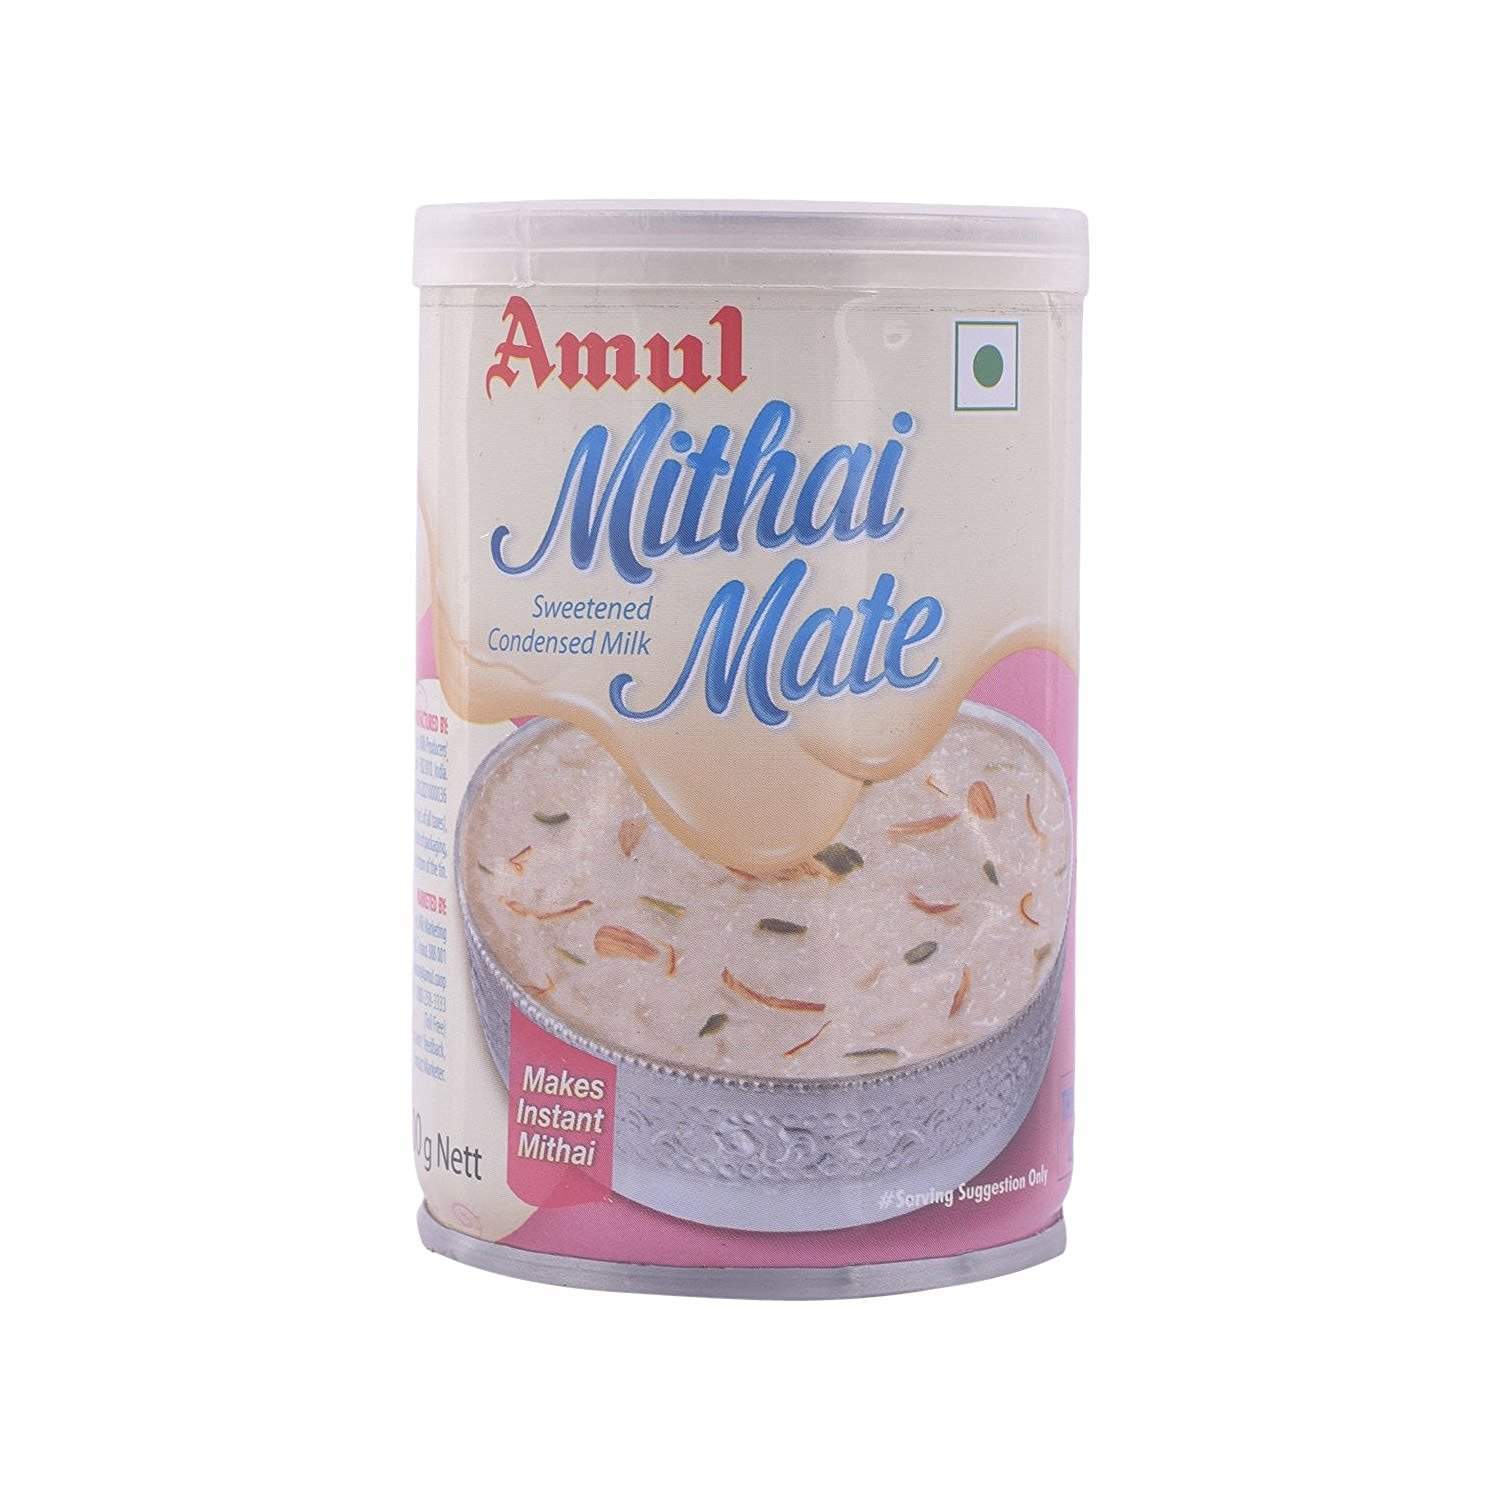 amul condensed milk price in india, amul mithai mate,Amul Mithai Mate - Condensed Milk online on awesome Dairy